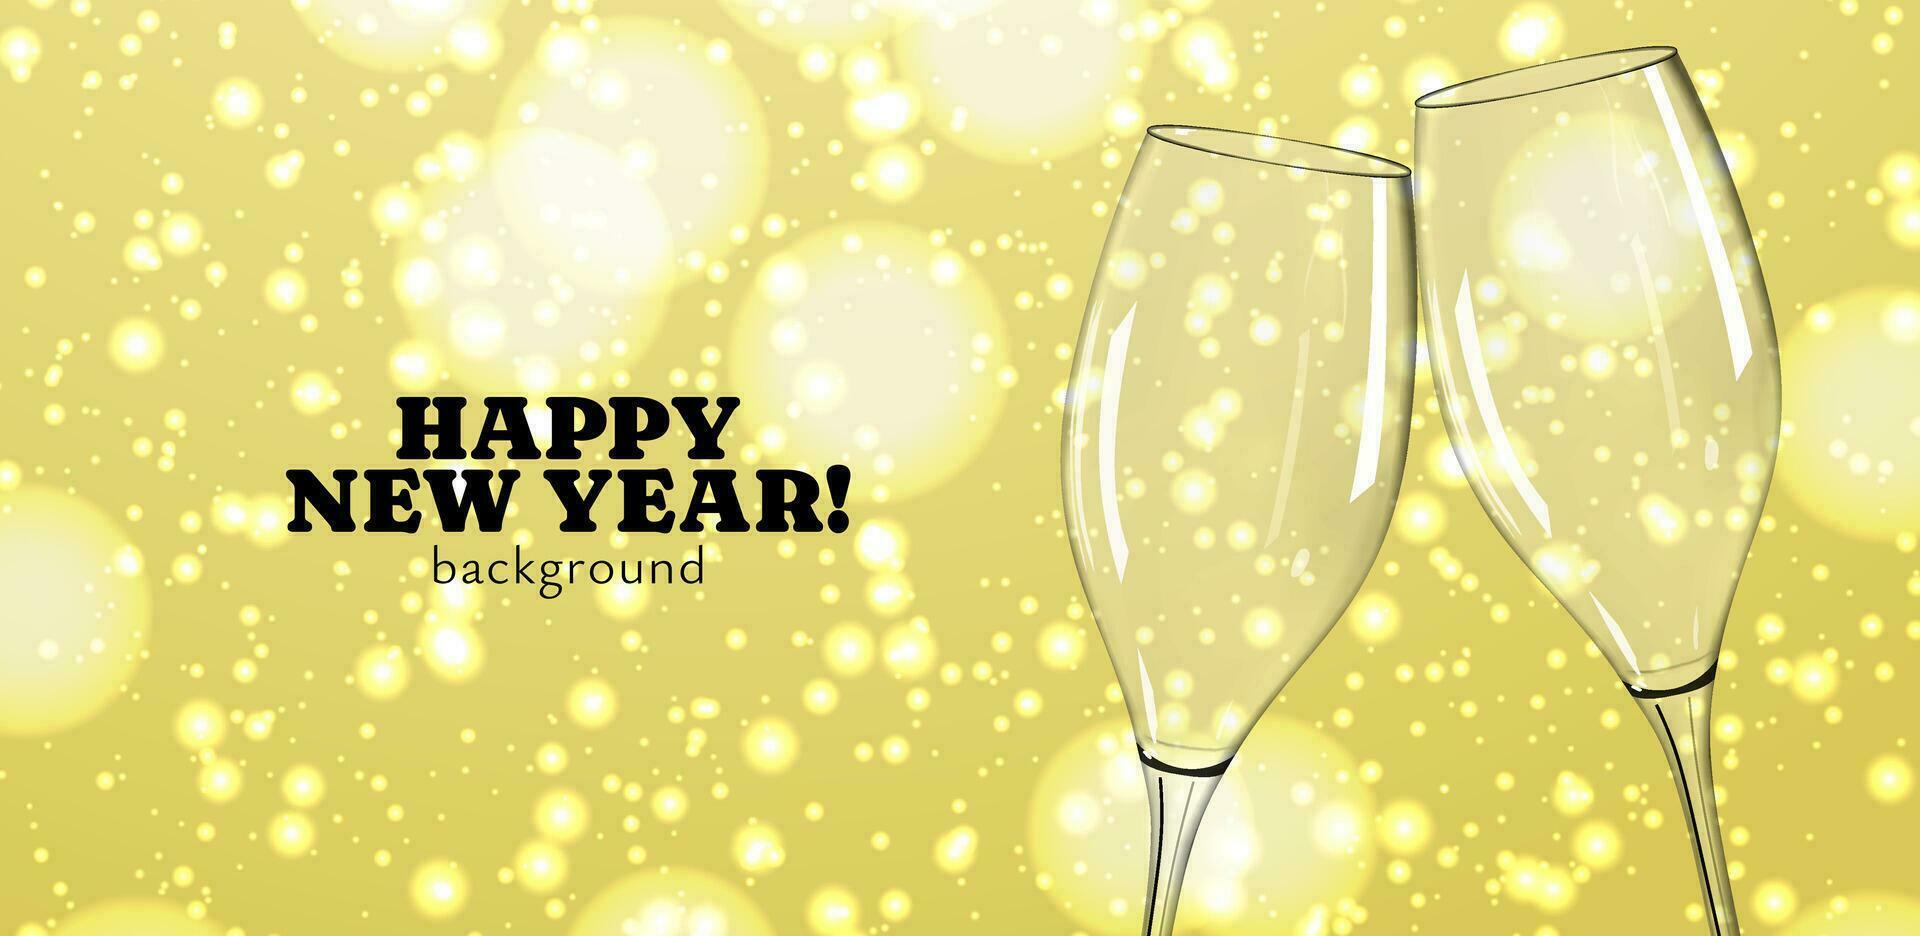 contento nuevo año celebracion felicidades diseño con realista 3d champán vaso vector